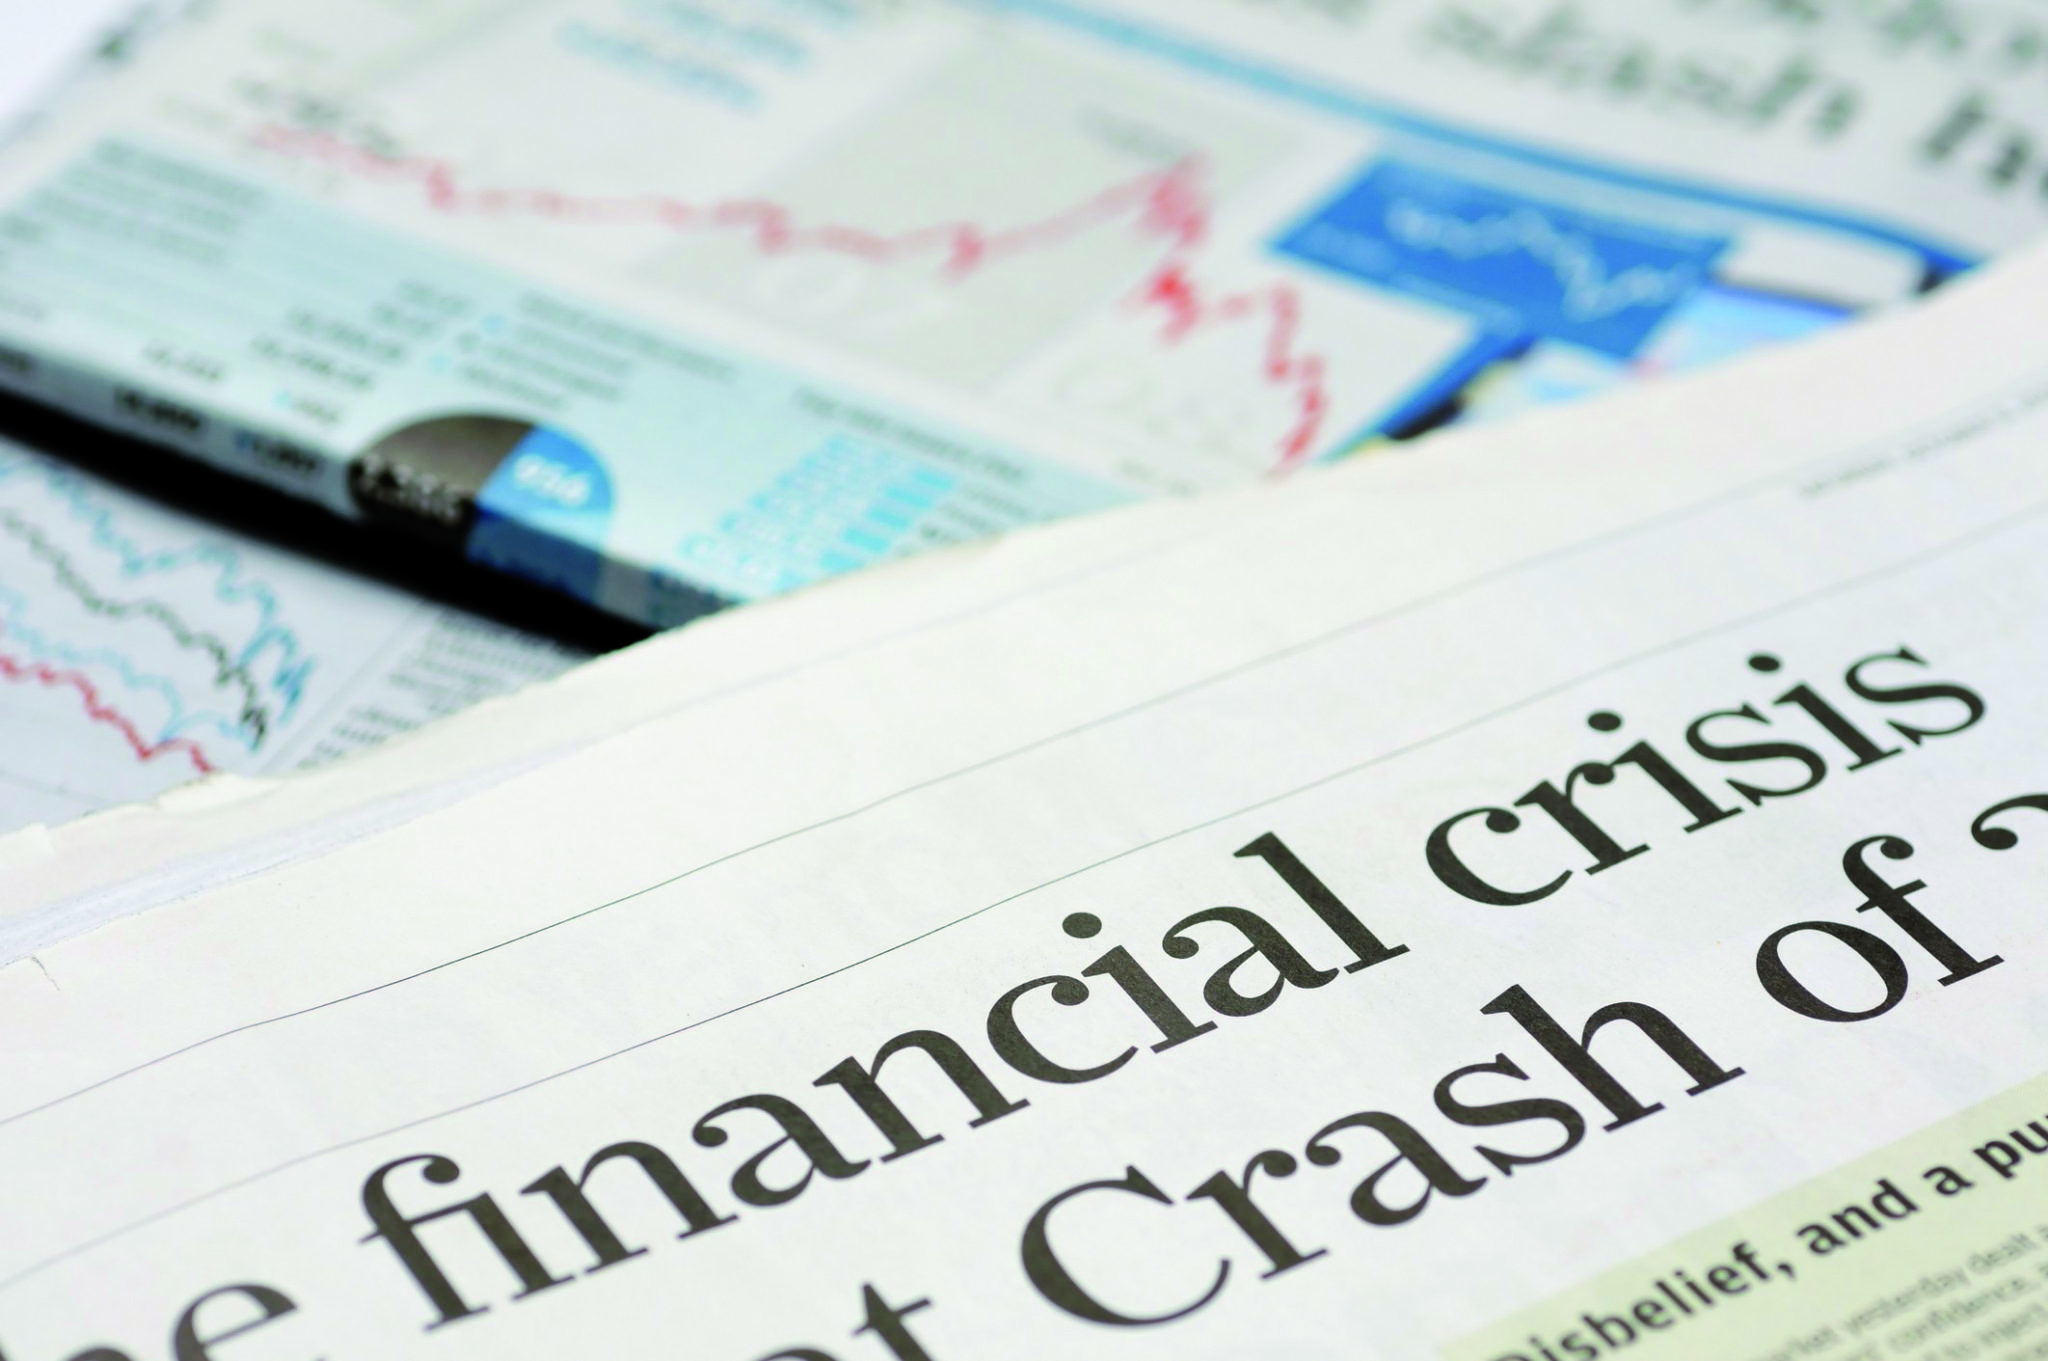 Zeitungsartikel zur Finanzkrise